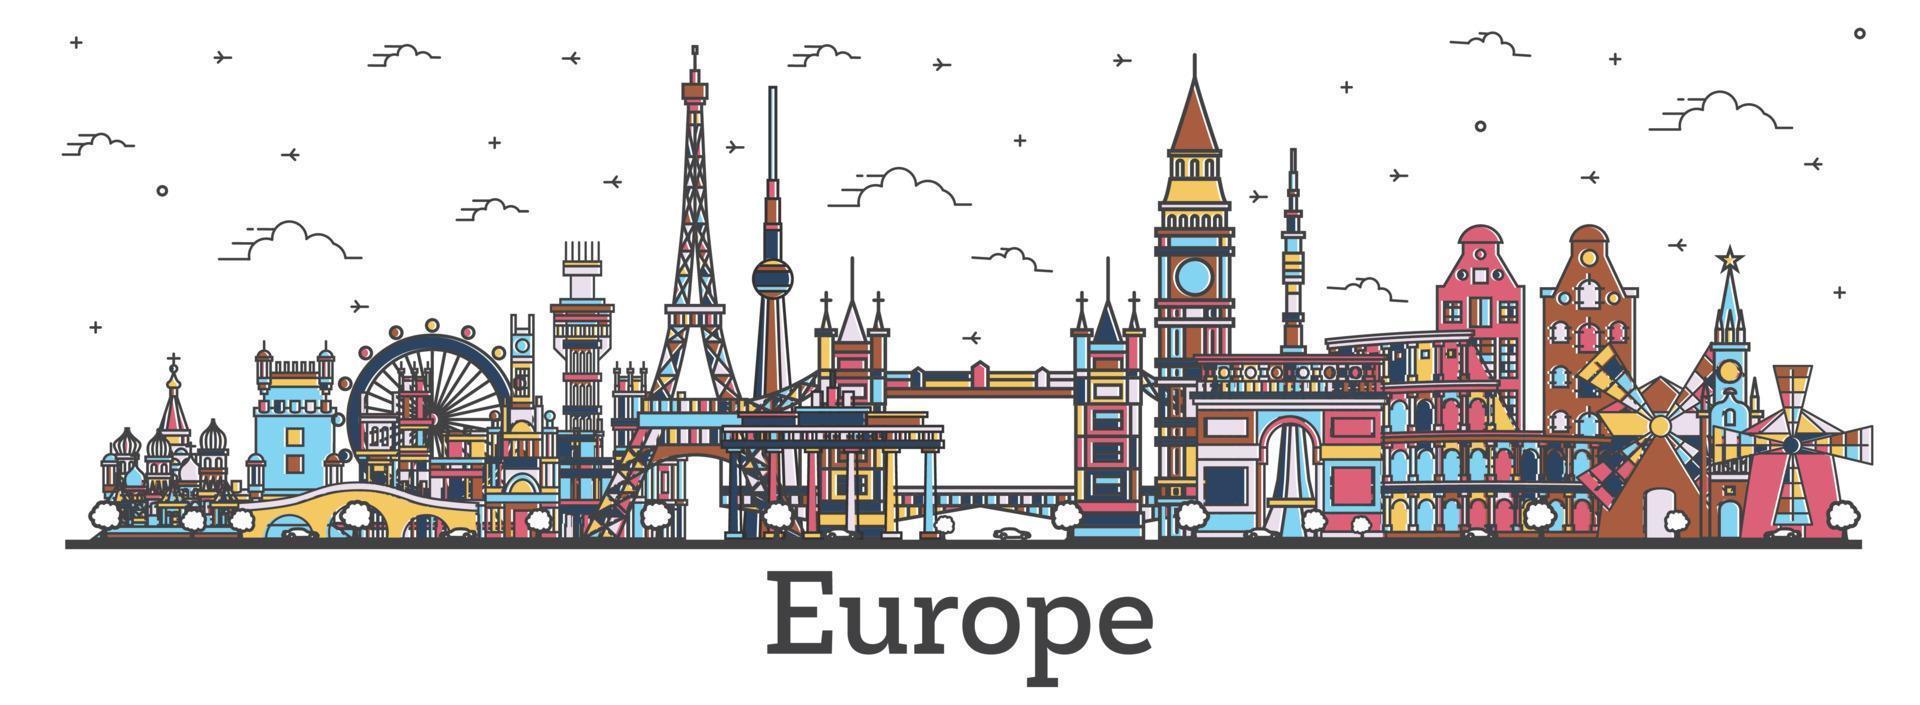 delinear marcos famosos na europa. conceito de viagens e turismo de negócios com edifícios de cor. vetor